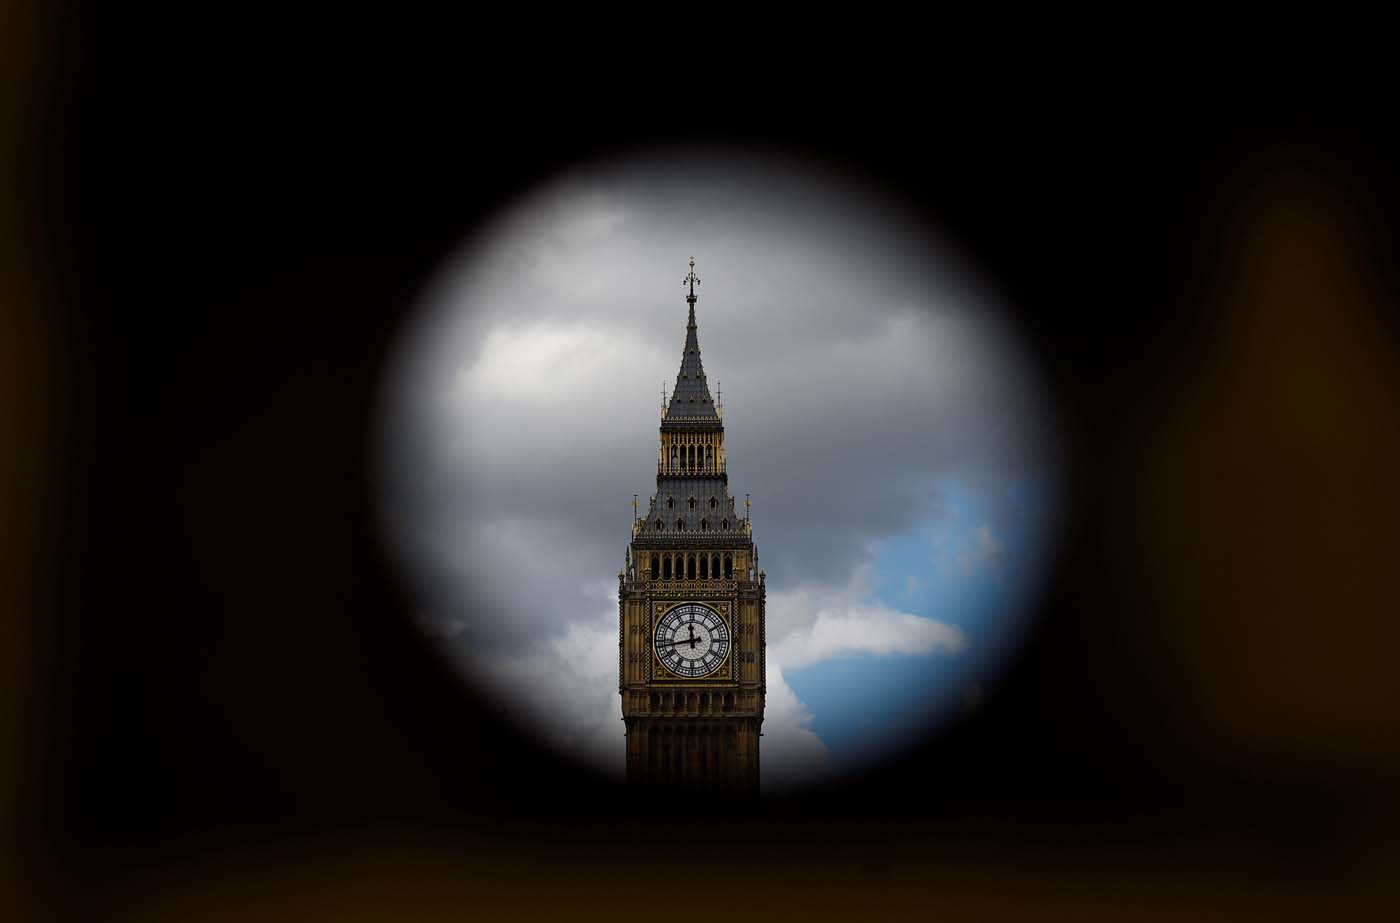 La campana del Big Ben de Londres estará en silencio por cuatro años (fotos)